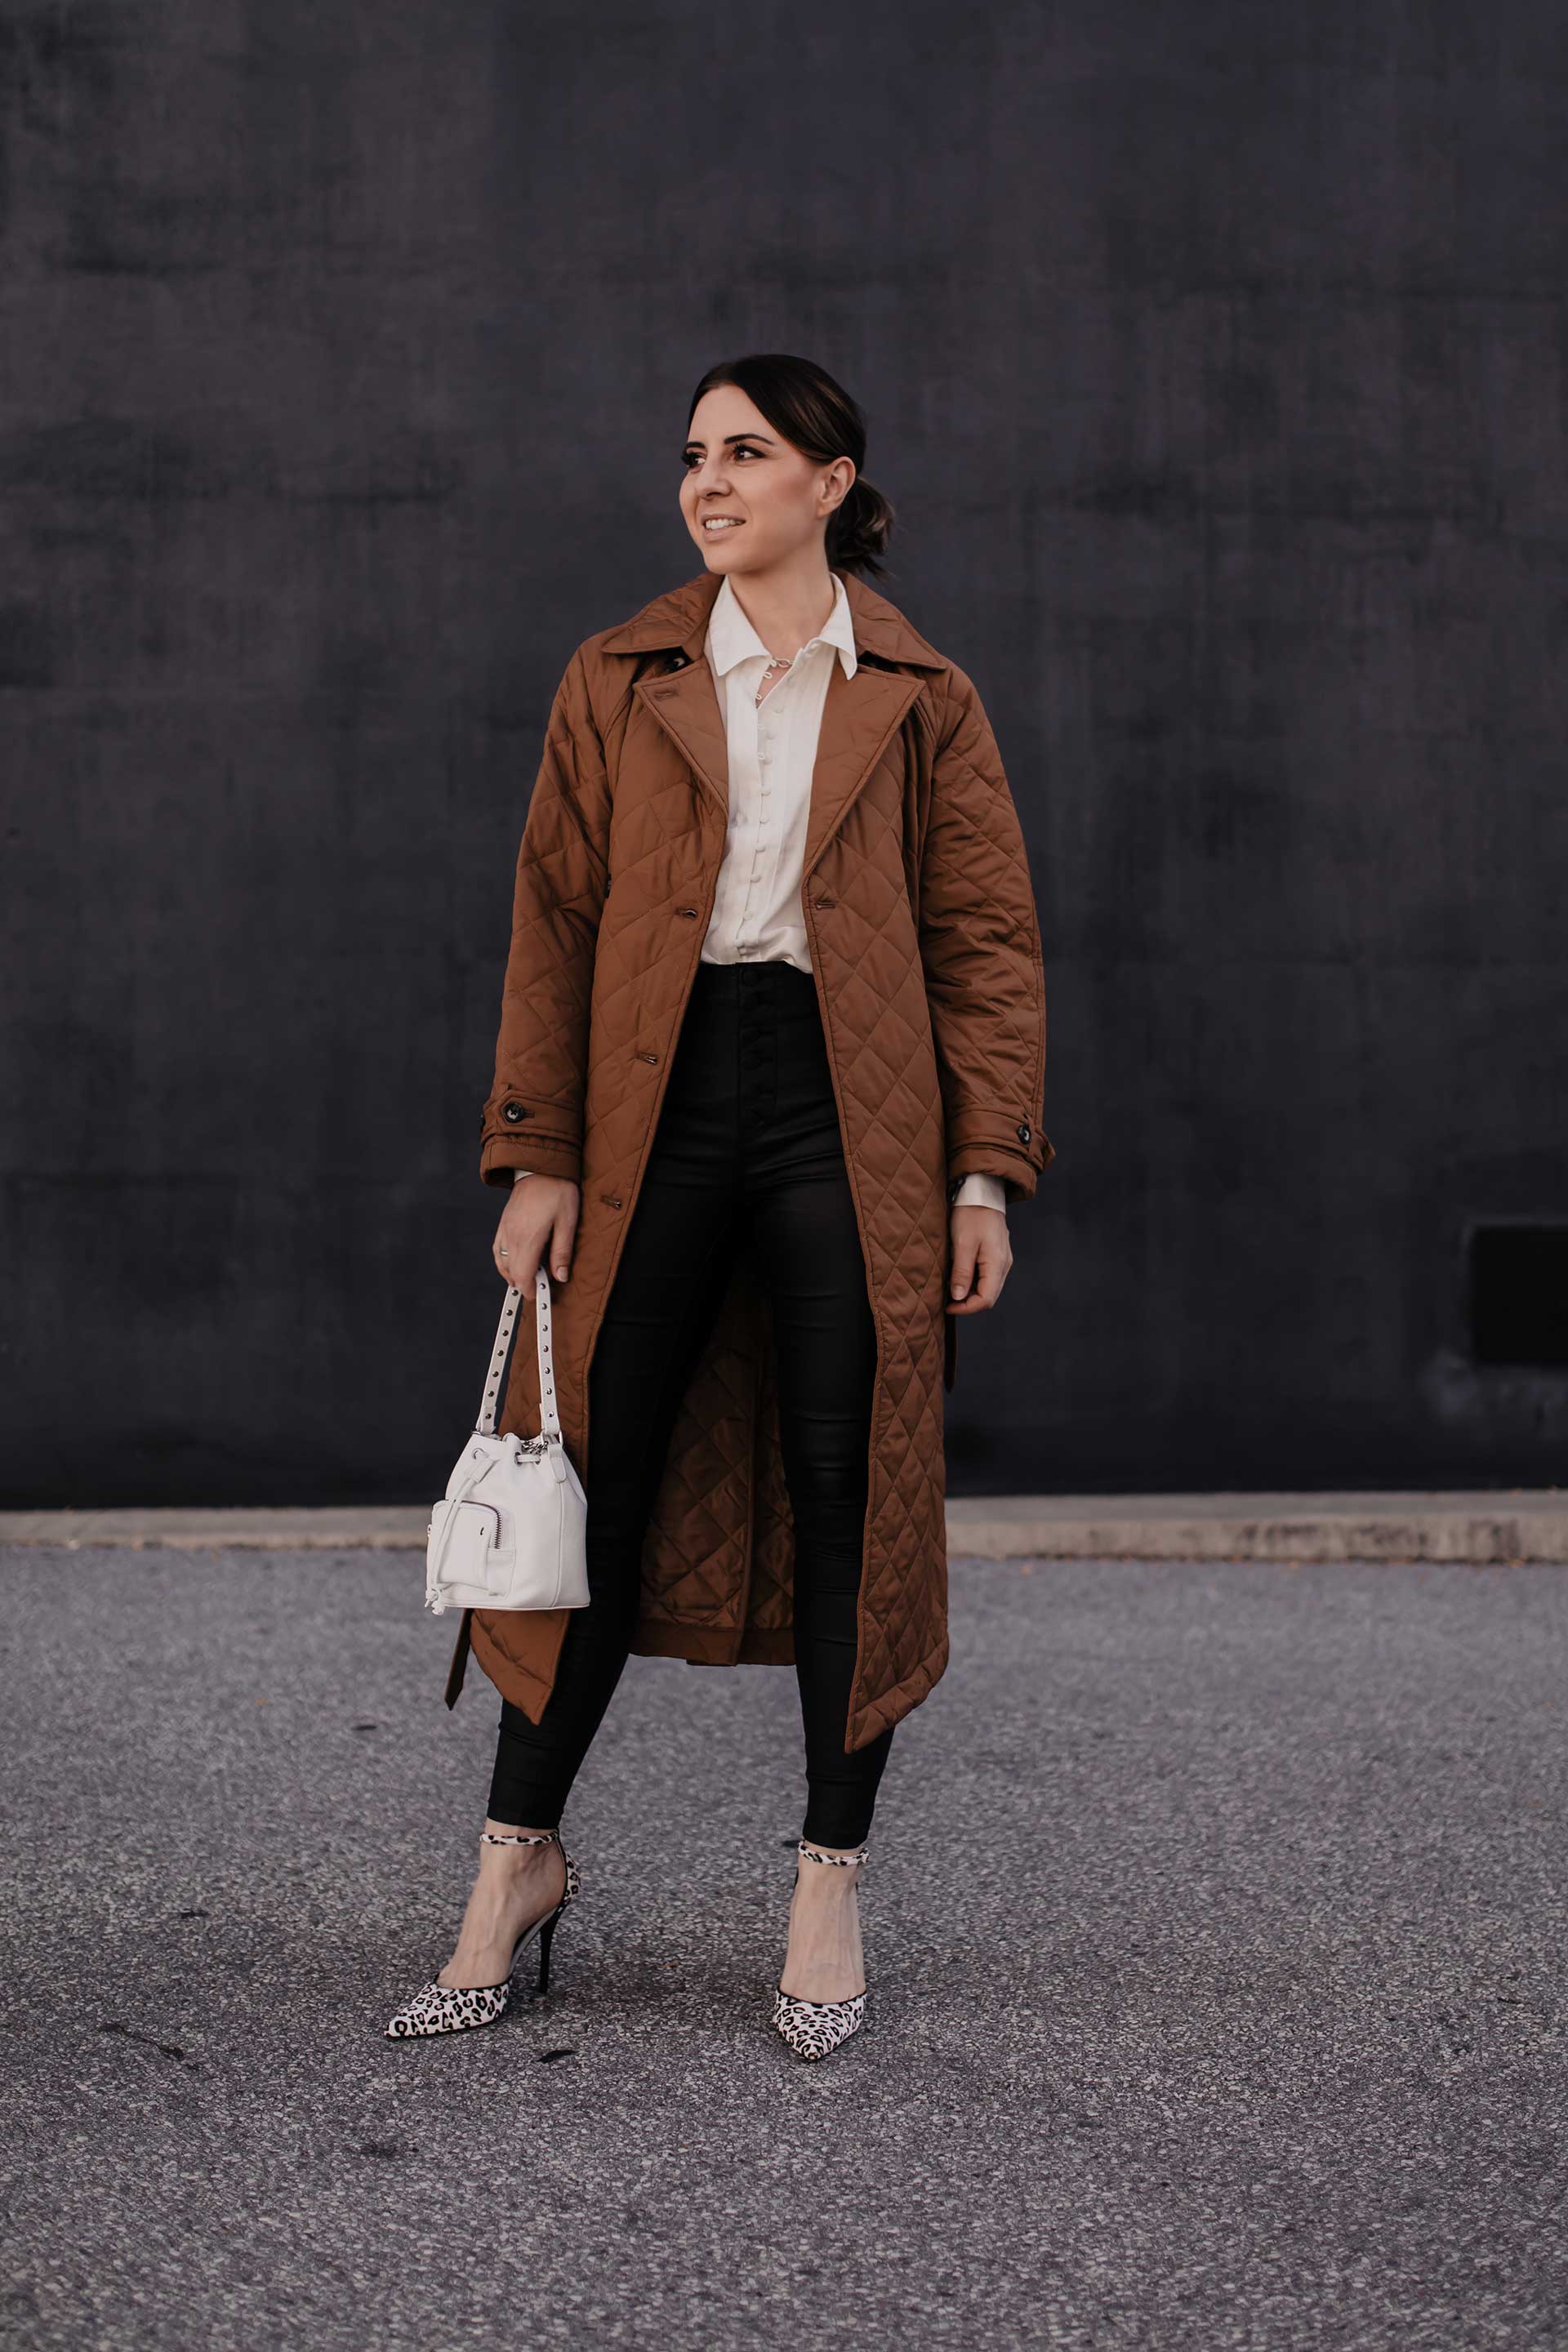 Du möchtest deine Lederhose im Büro kombinieren? Am Modeblog habe ich 5 Tipps, die du beachten solltest, wenn du die Lederhose im Business-Casual Outfit tragen möchtest. www.whoismocca.com #bürooutfit #business #modetrends #lederhose